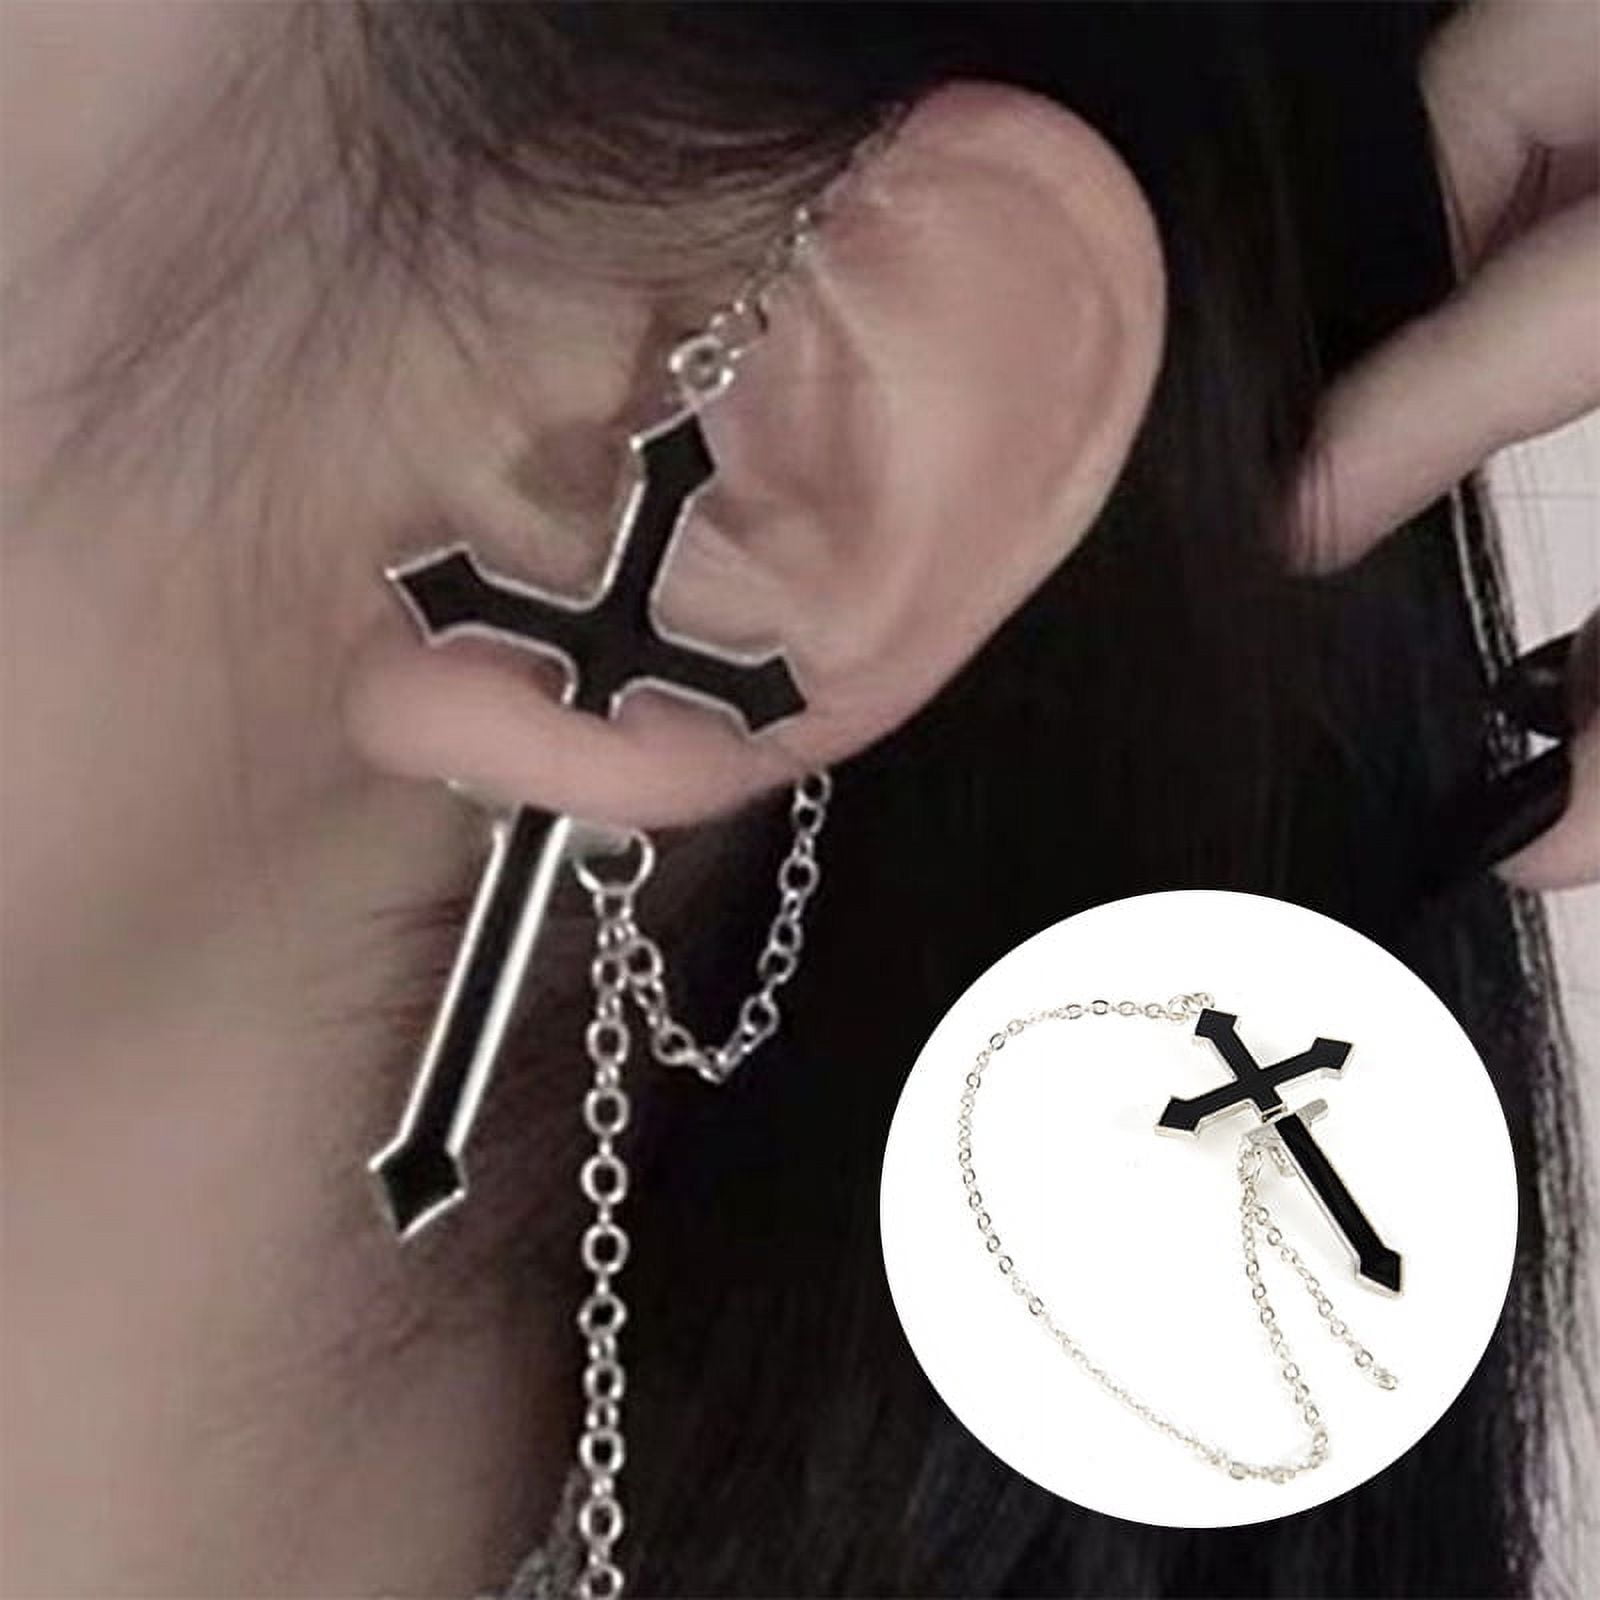 1Pc Black Cross Drop Earring with Chain Ear Cuff Trendy Women